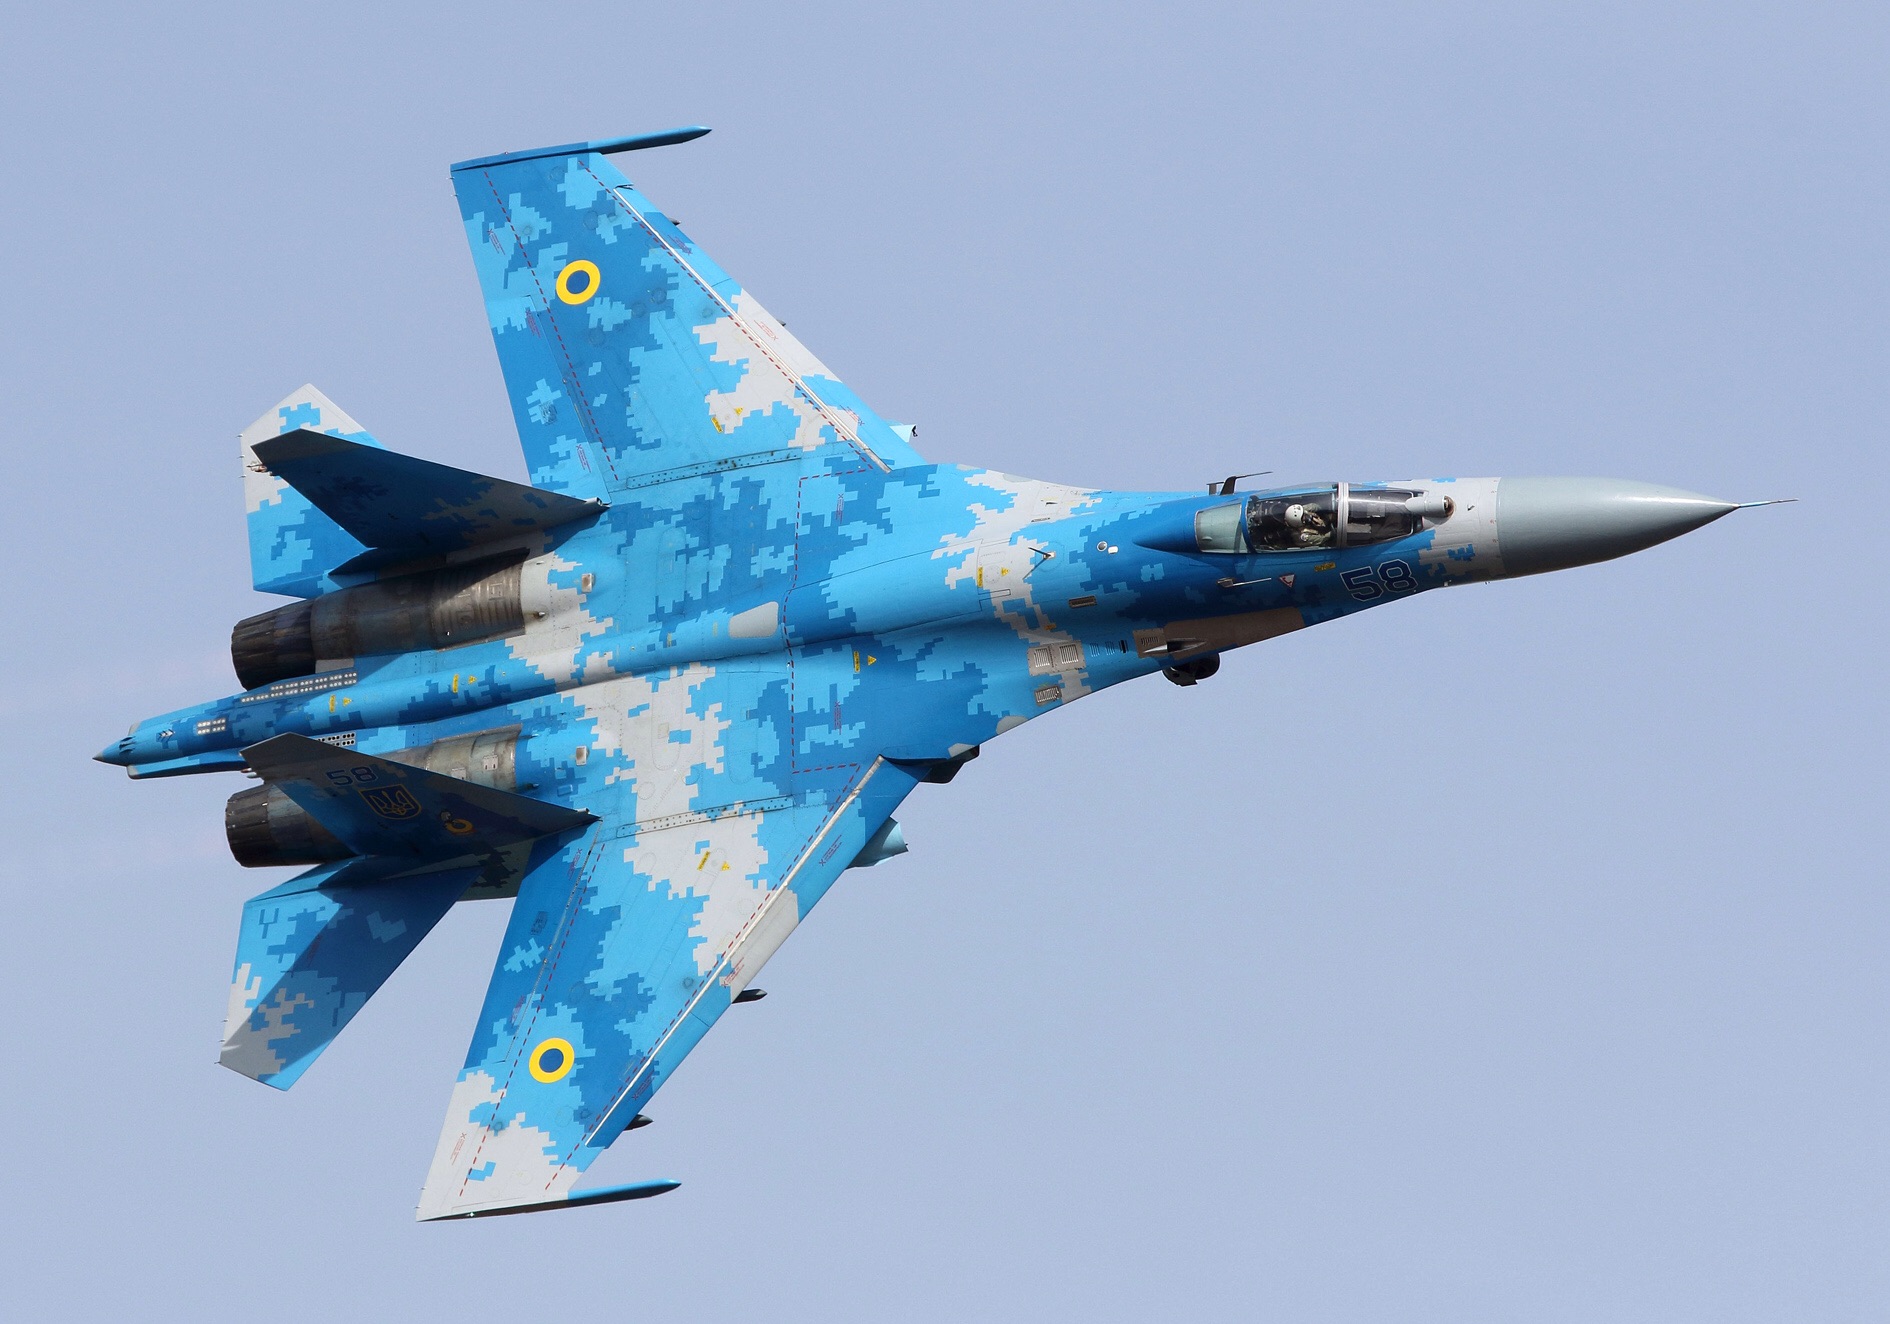 Украинский военного летчика полковника Александра Оксанченко был признан лучшим за выполнение фигур высшего пилотажа на истребителе Су-27. 